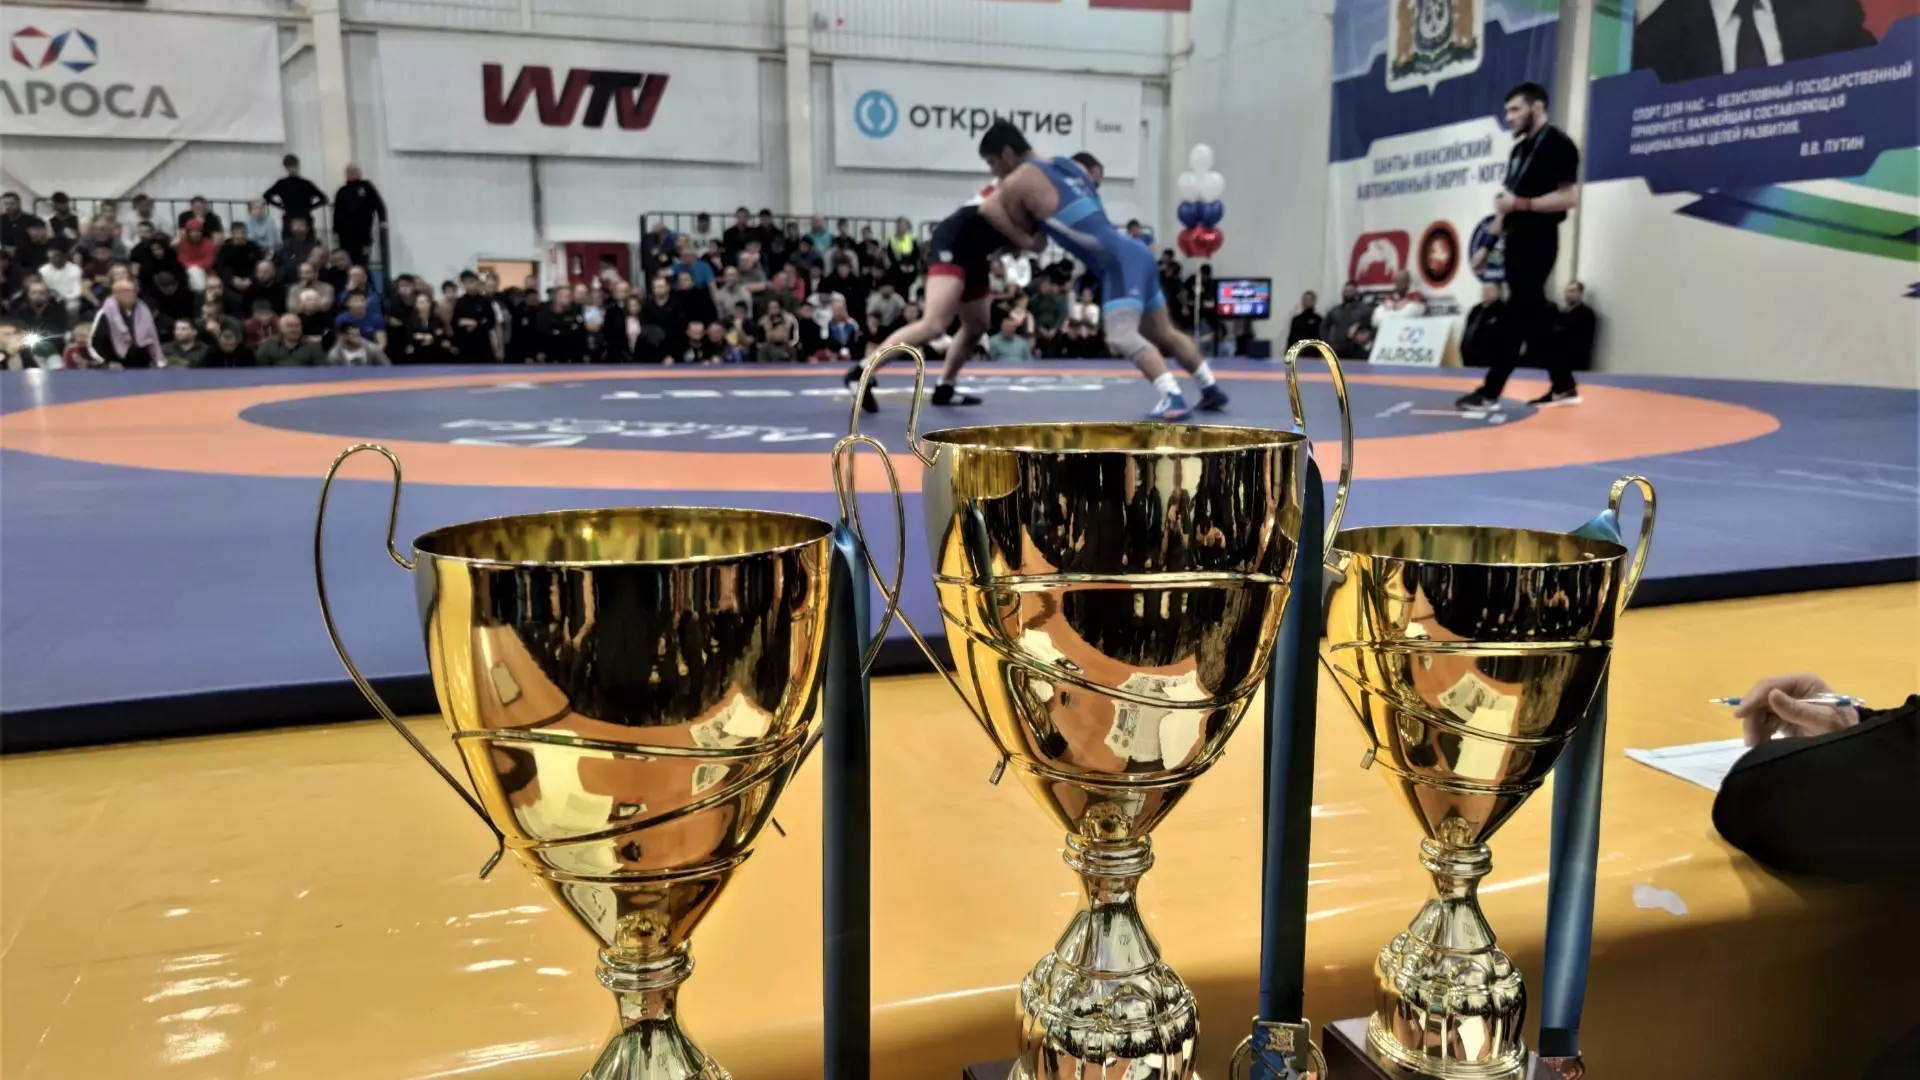 Более двухсот спортсменов по вольной борьбе борются за победу на Международном турнире в Пойково